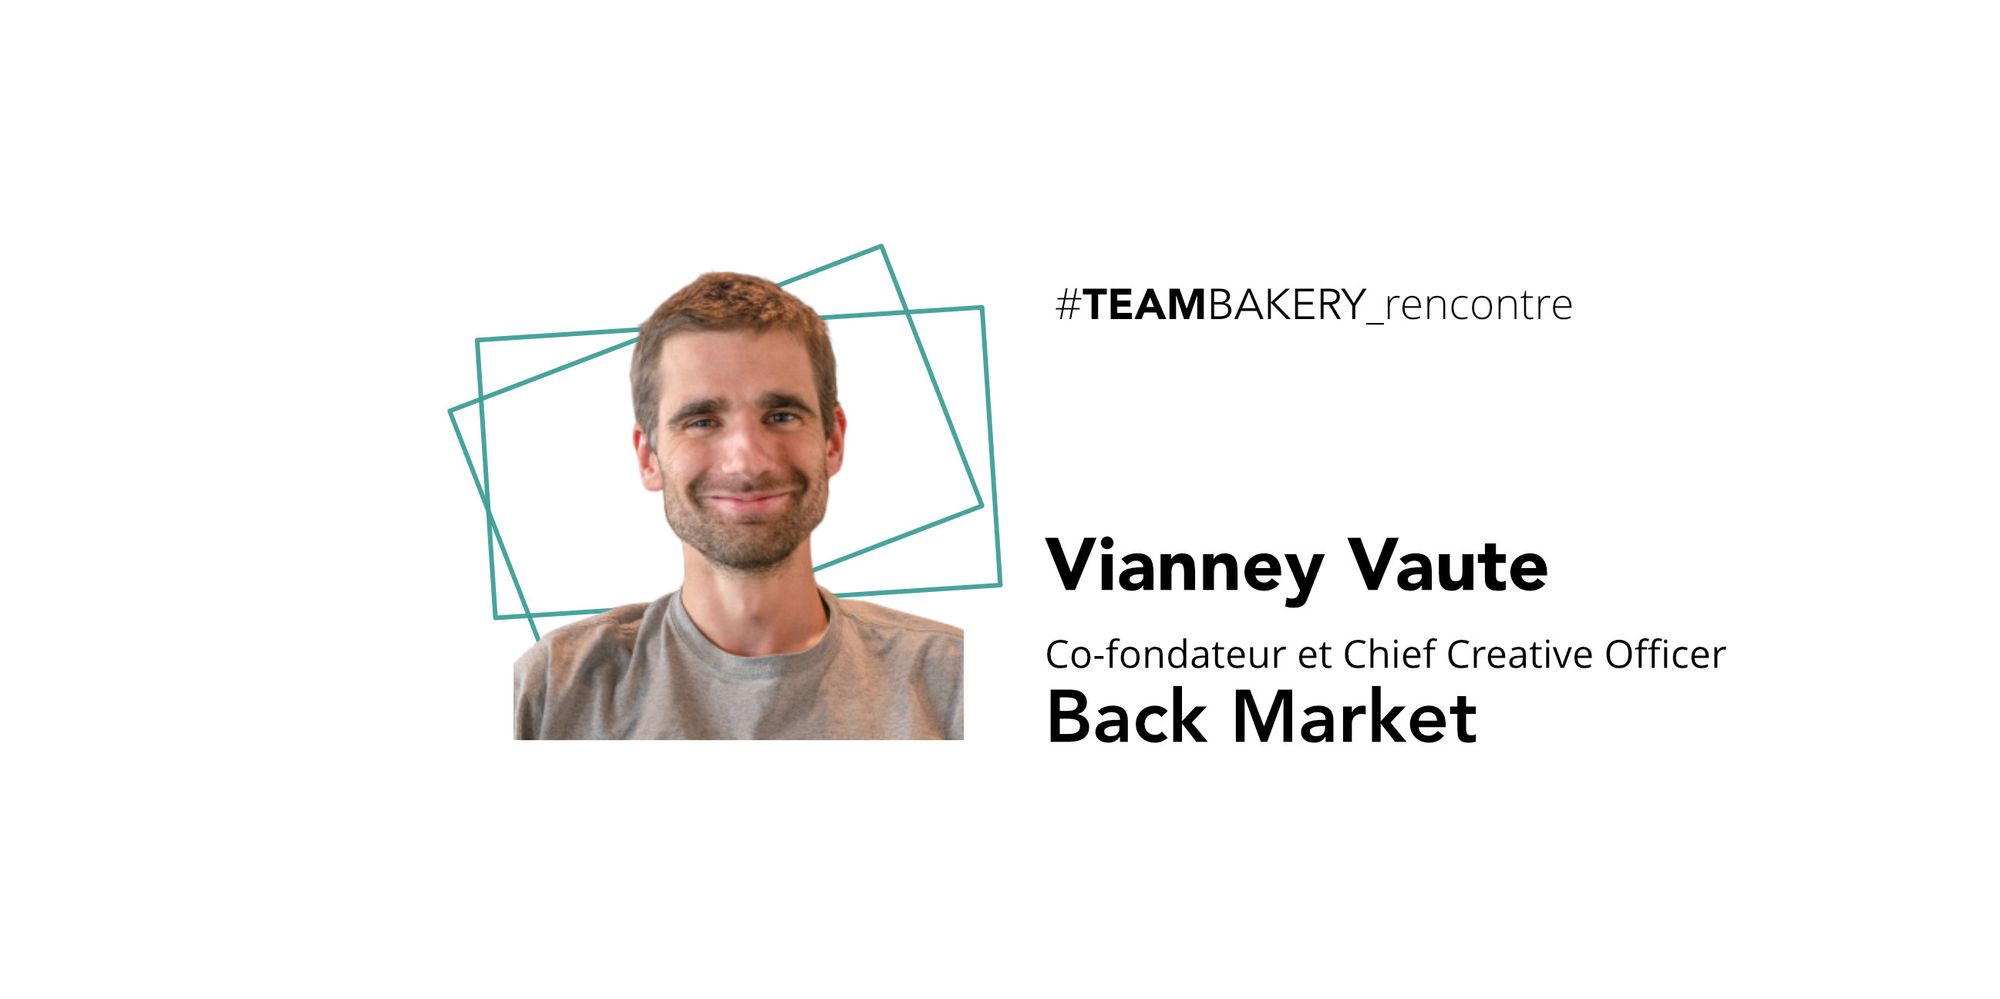 L’Upcycling comme business model, par Vianney Vaute, 
co-fondateur de Back Market.